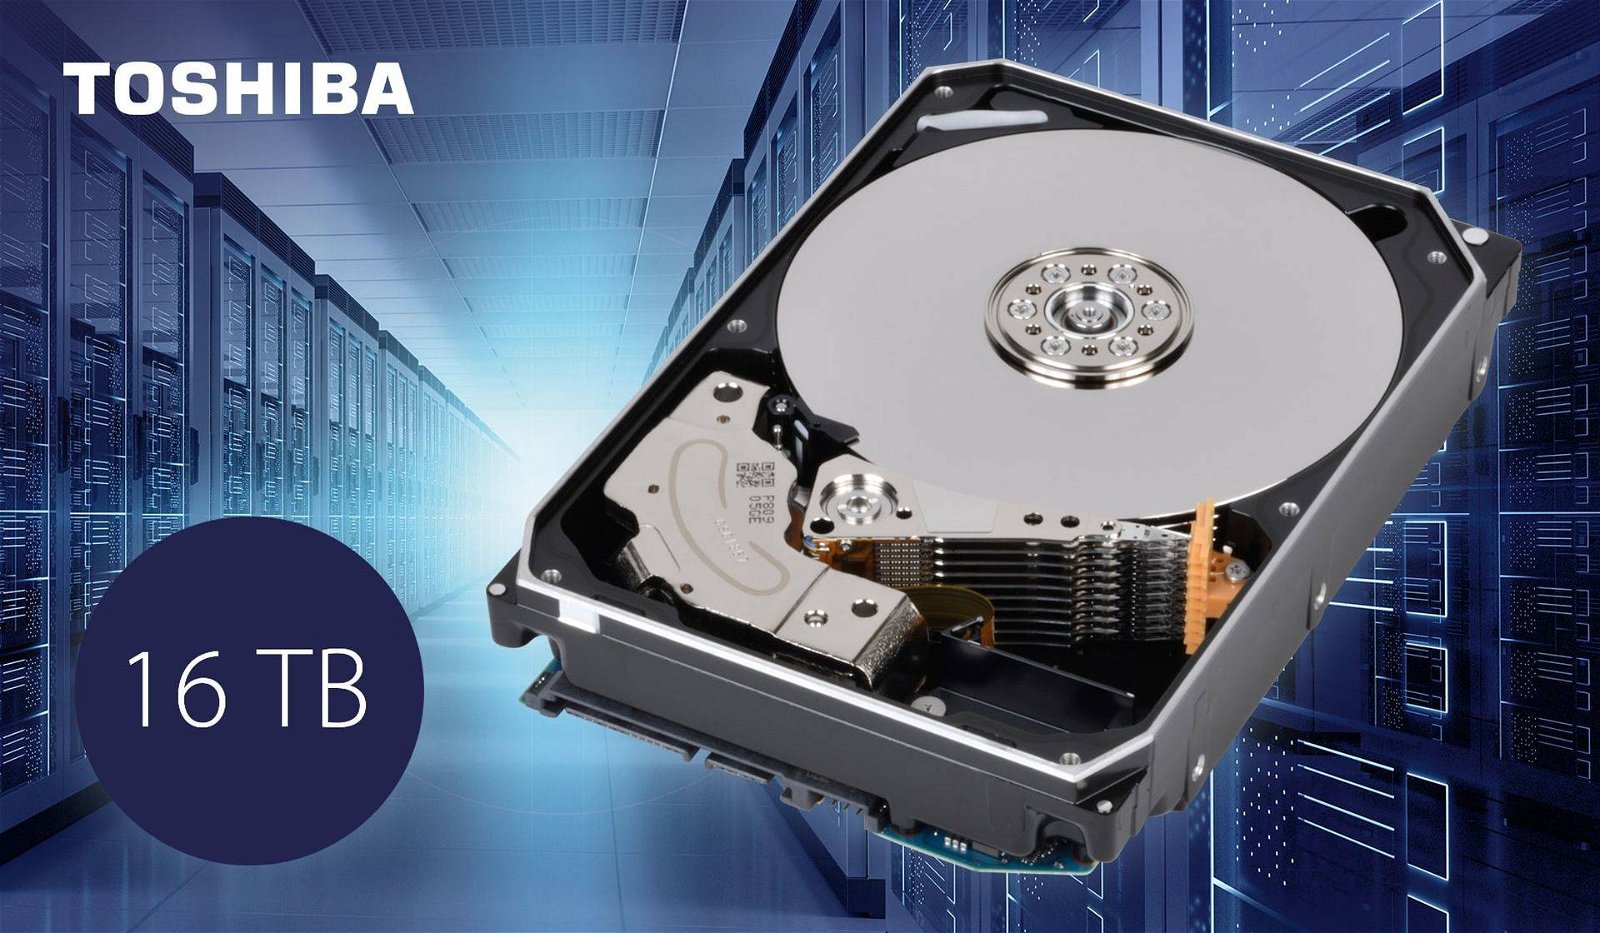 Immagine di Toshiba, hard disk MG08 da 16 TB per il mercato enterprise